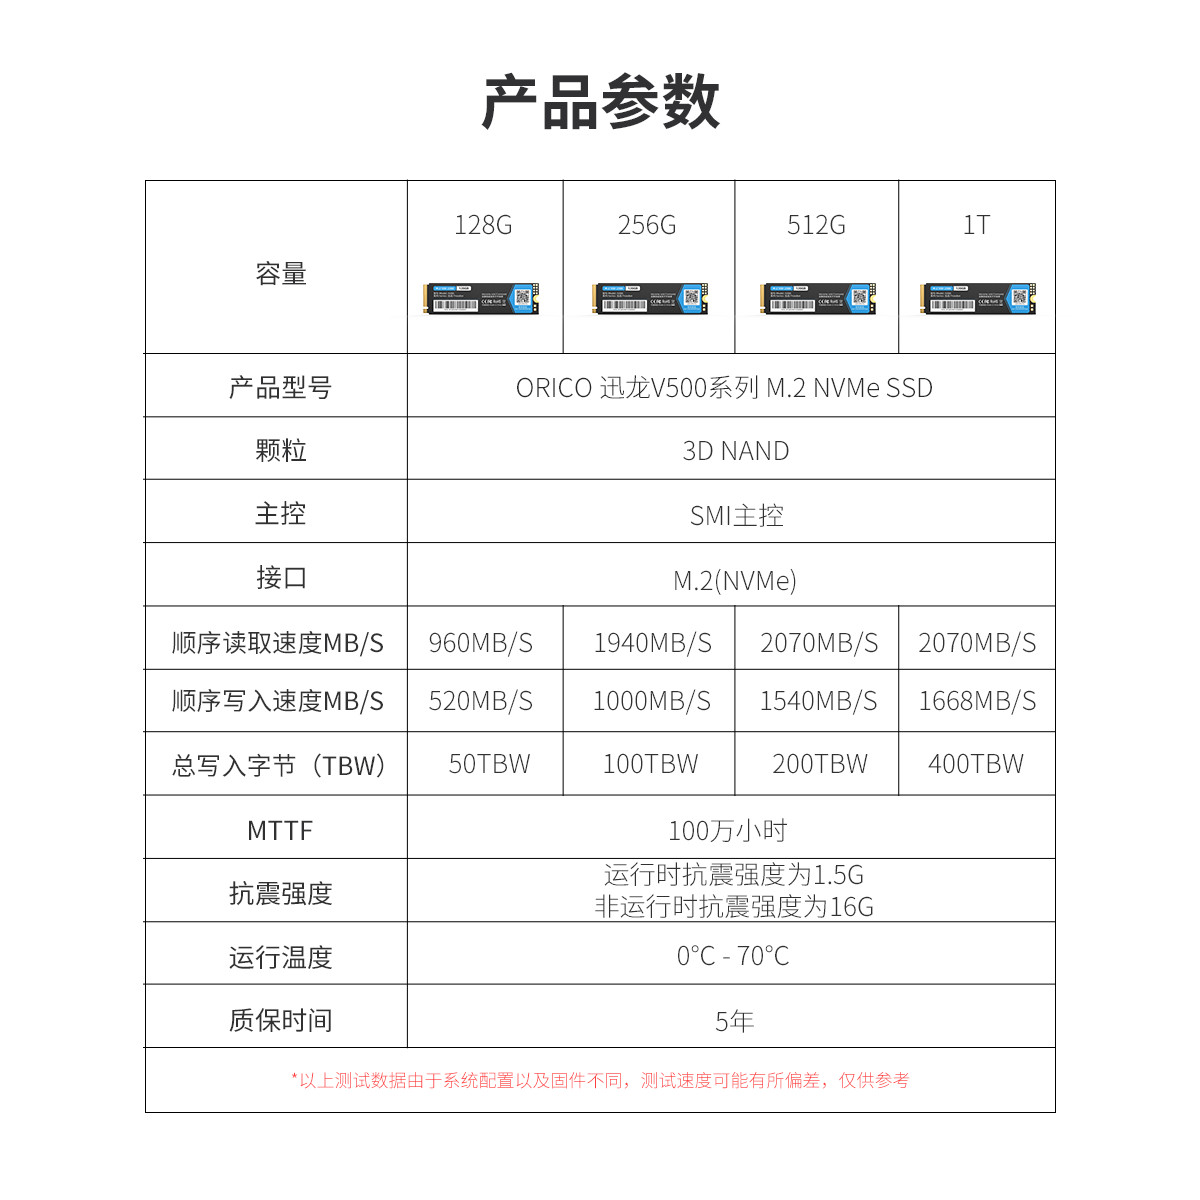 M.2 NVMe SSD 2280迅龙系列固态硬盘产品参数展示